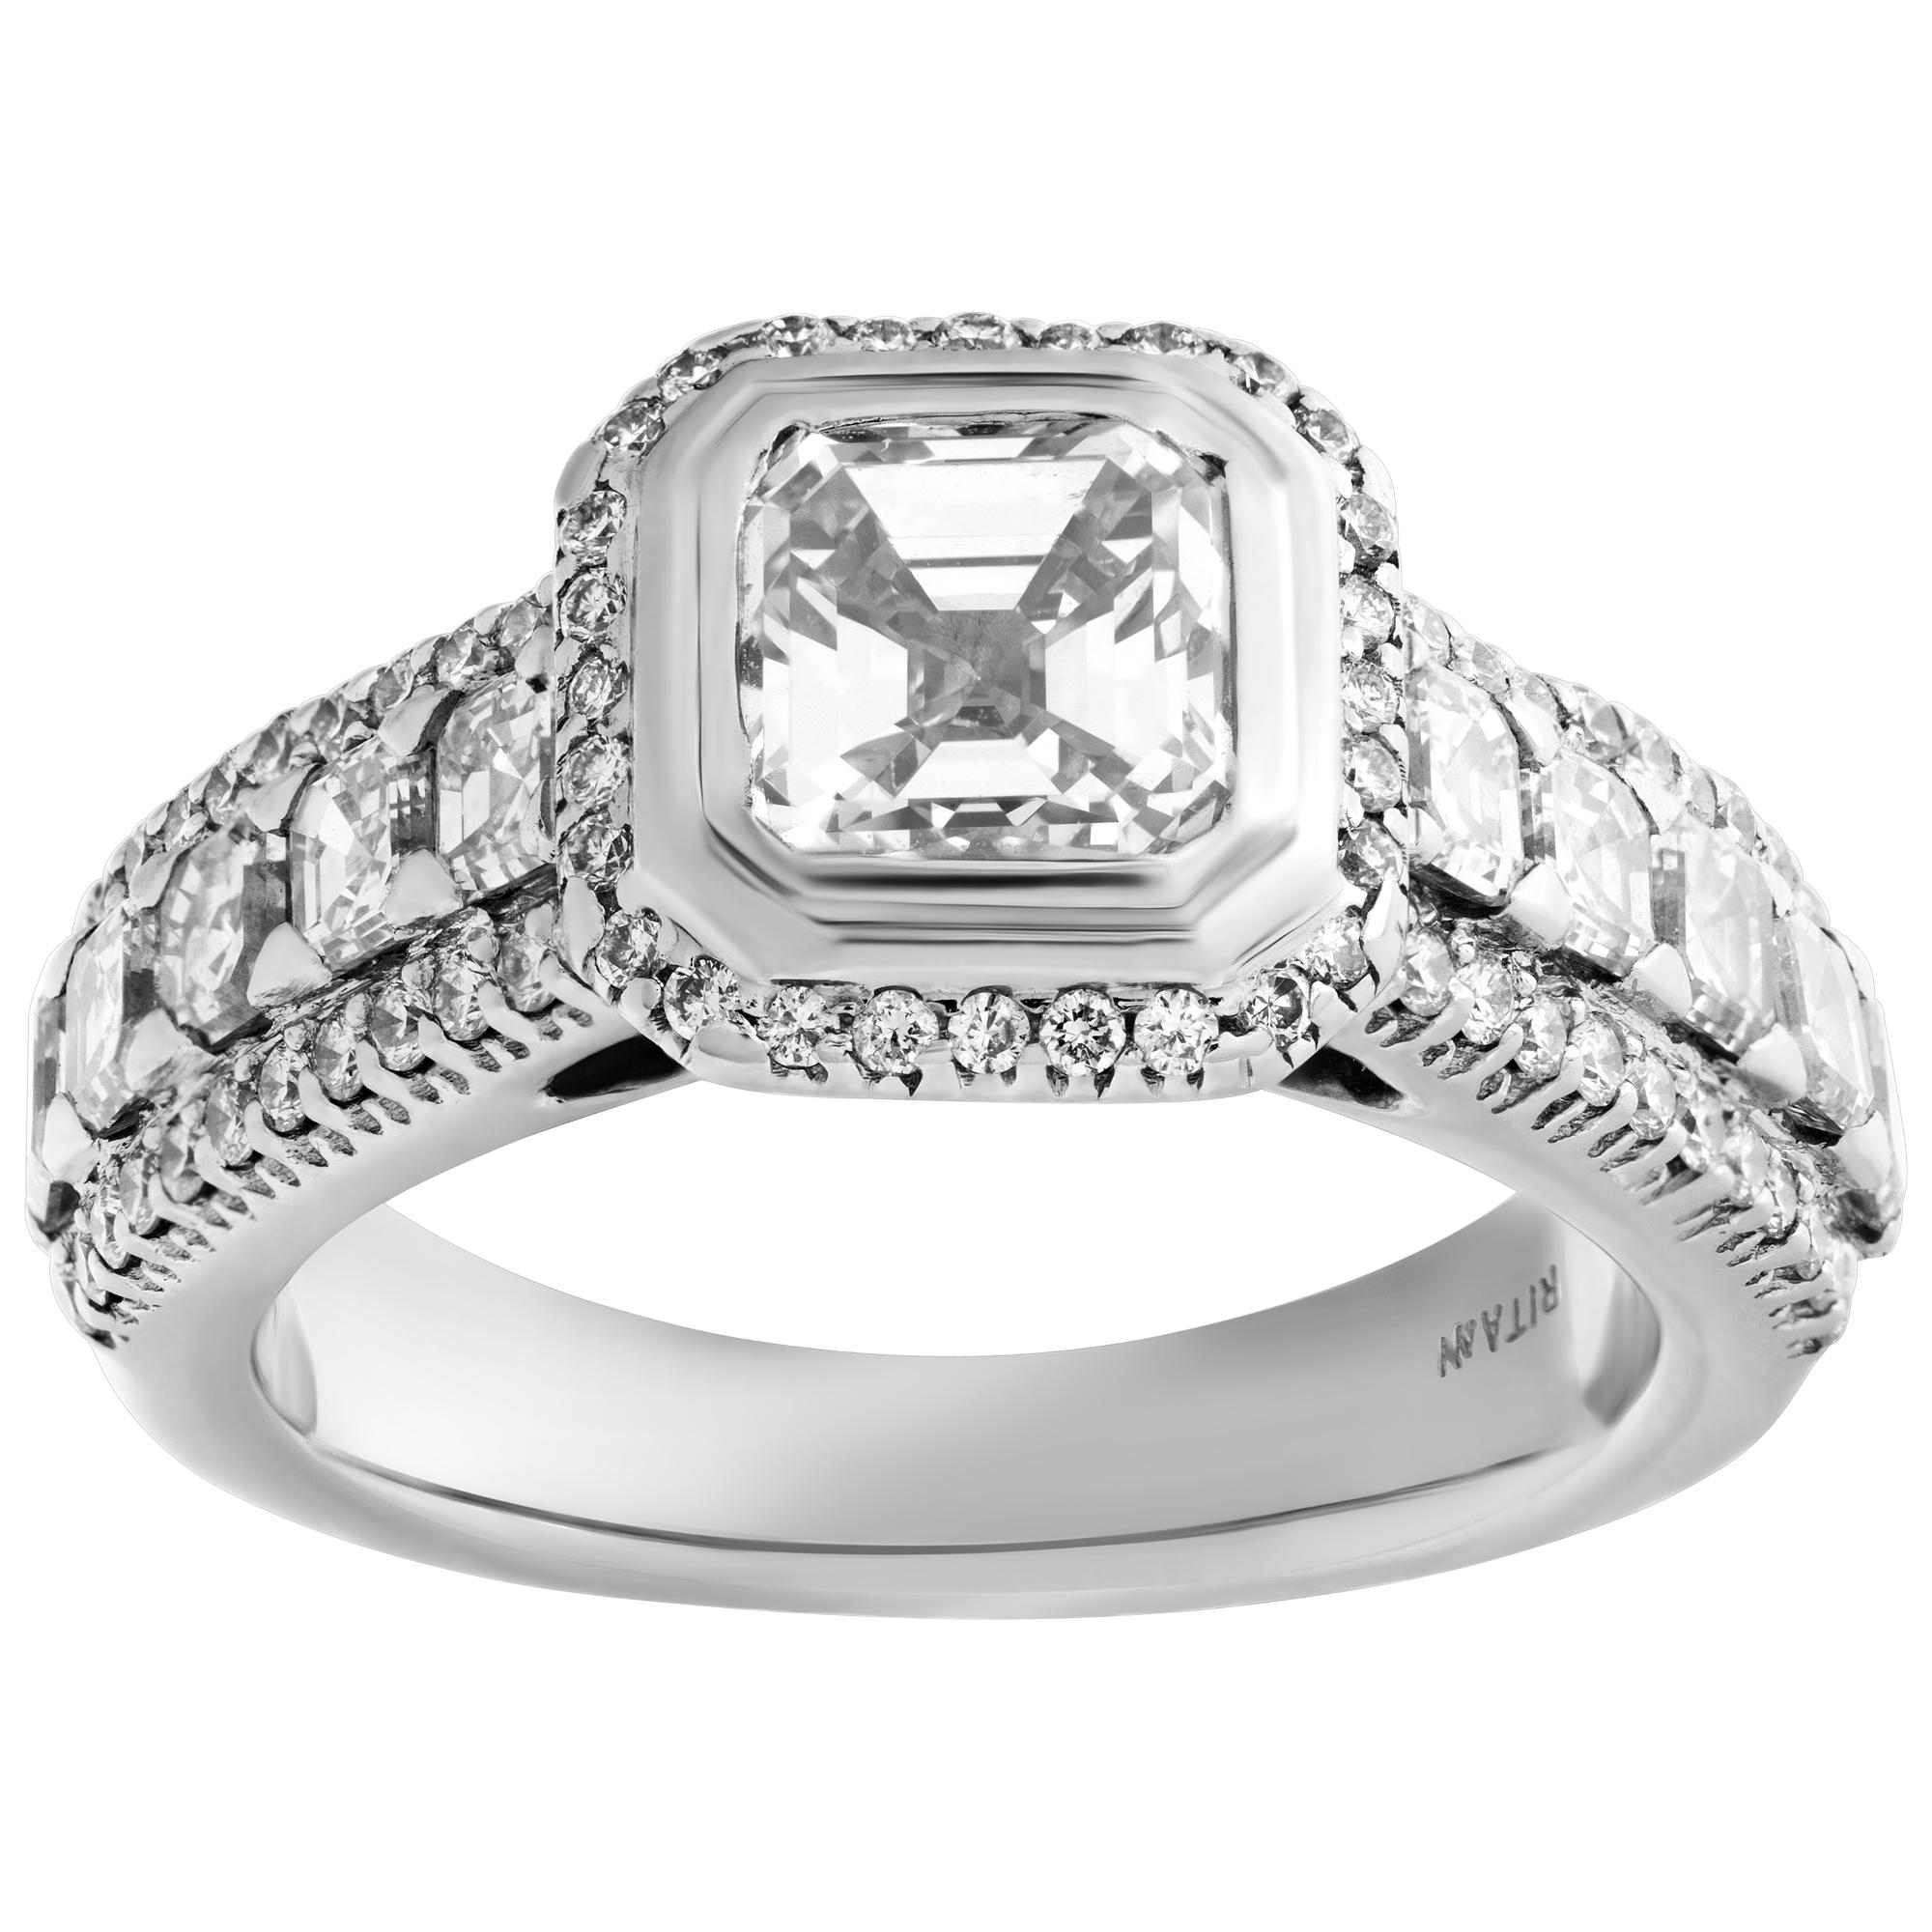 White gold diamond ring w/ mounted diamond set in white gold w/ diamond accents